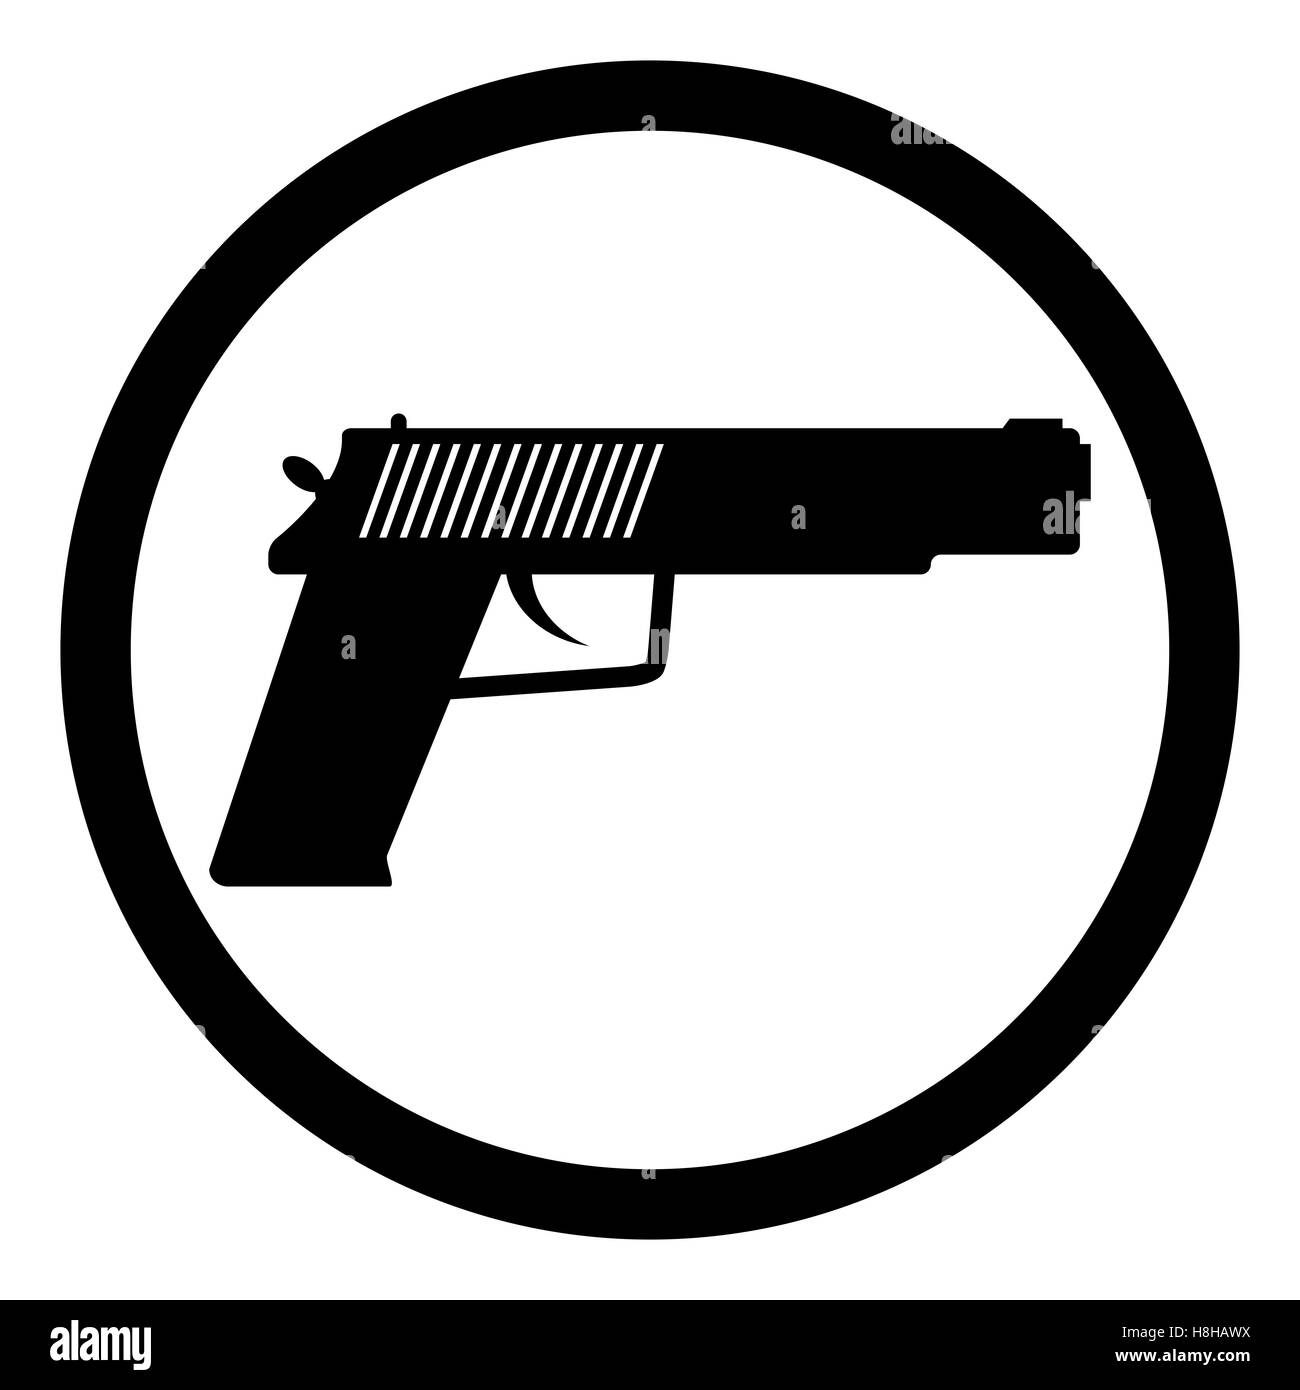 Pistole-Symbol schwarz. Silhouette für Militär oder Polizei Pistole, Pistole Vektor-illustration Stockfoto